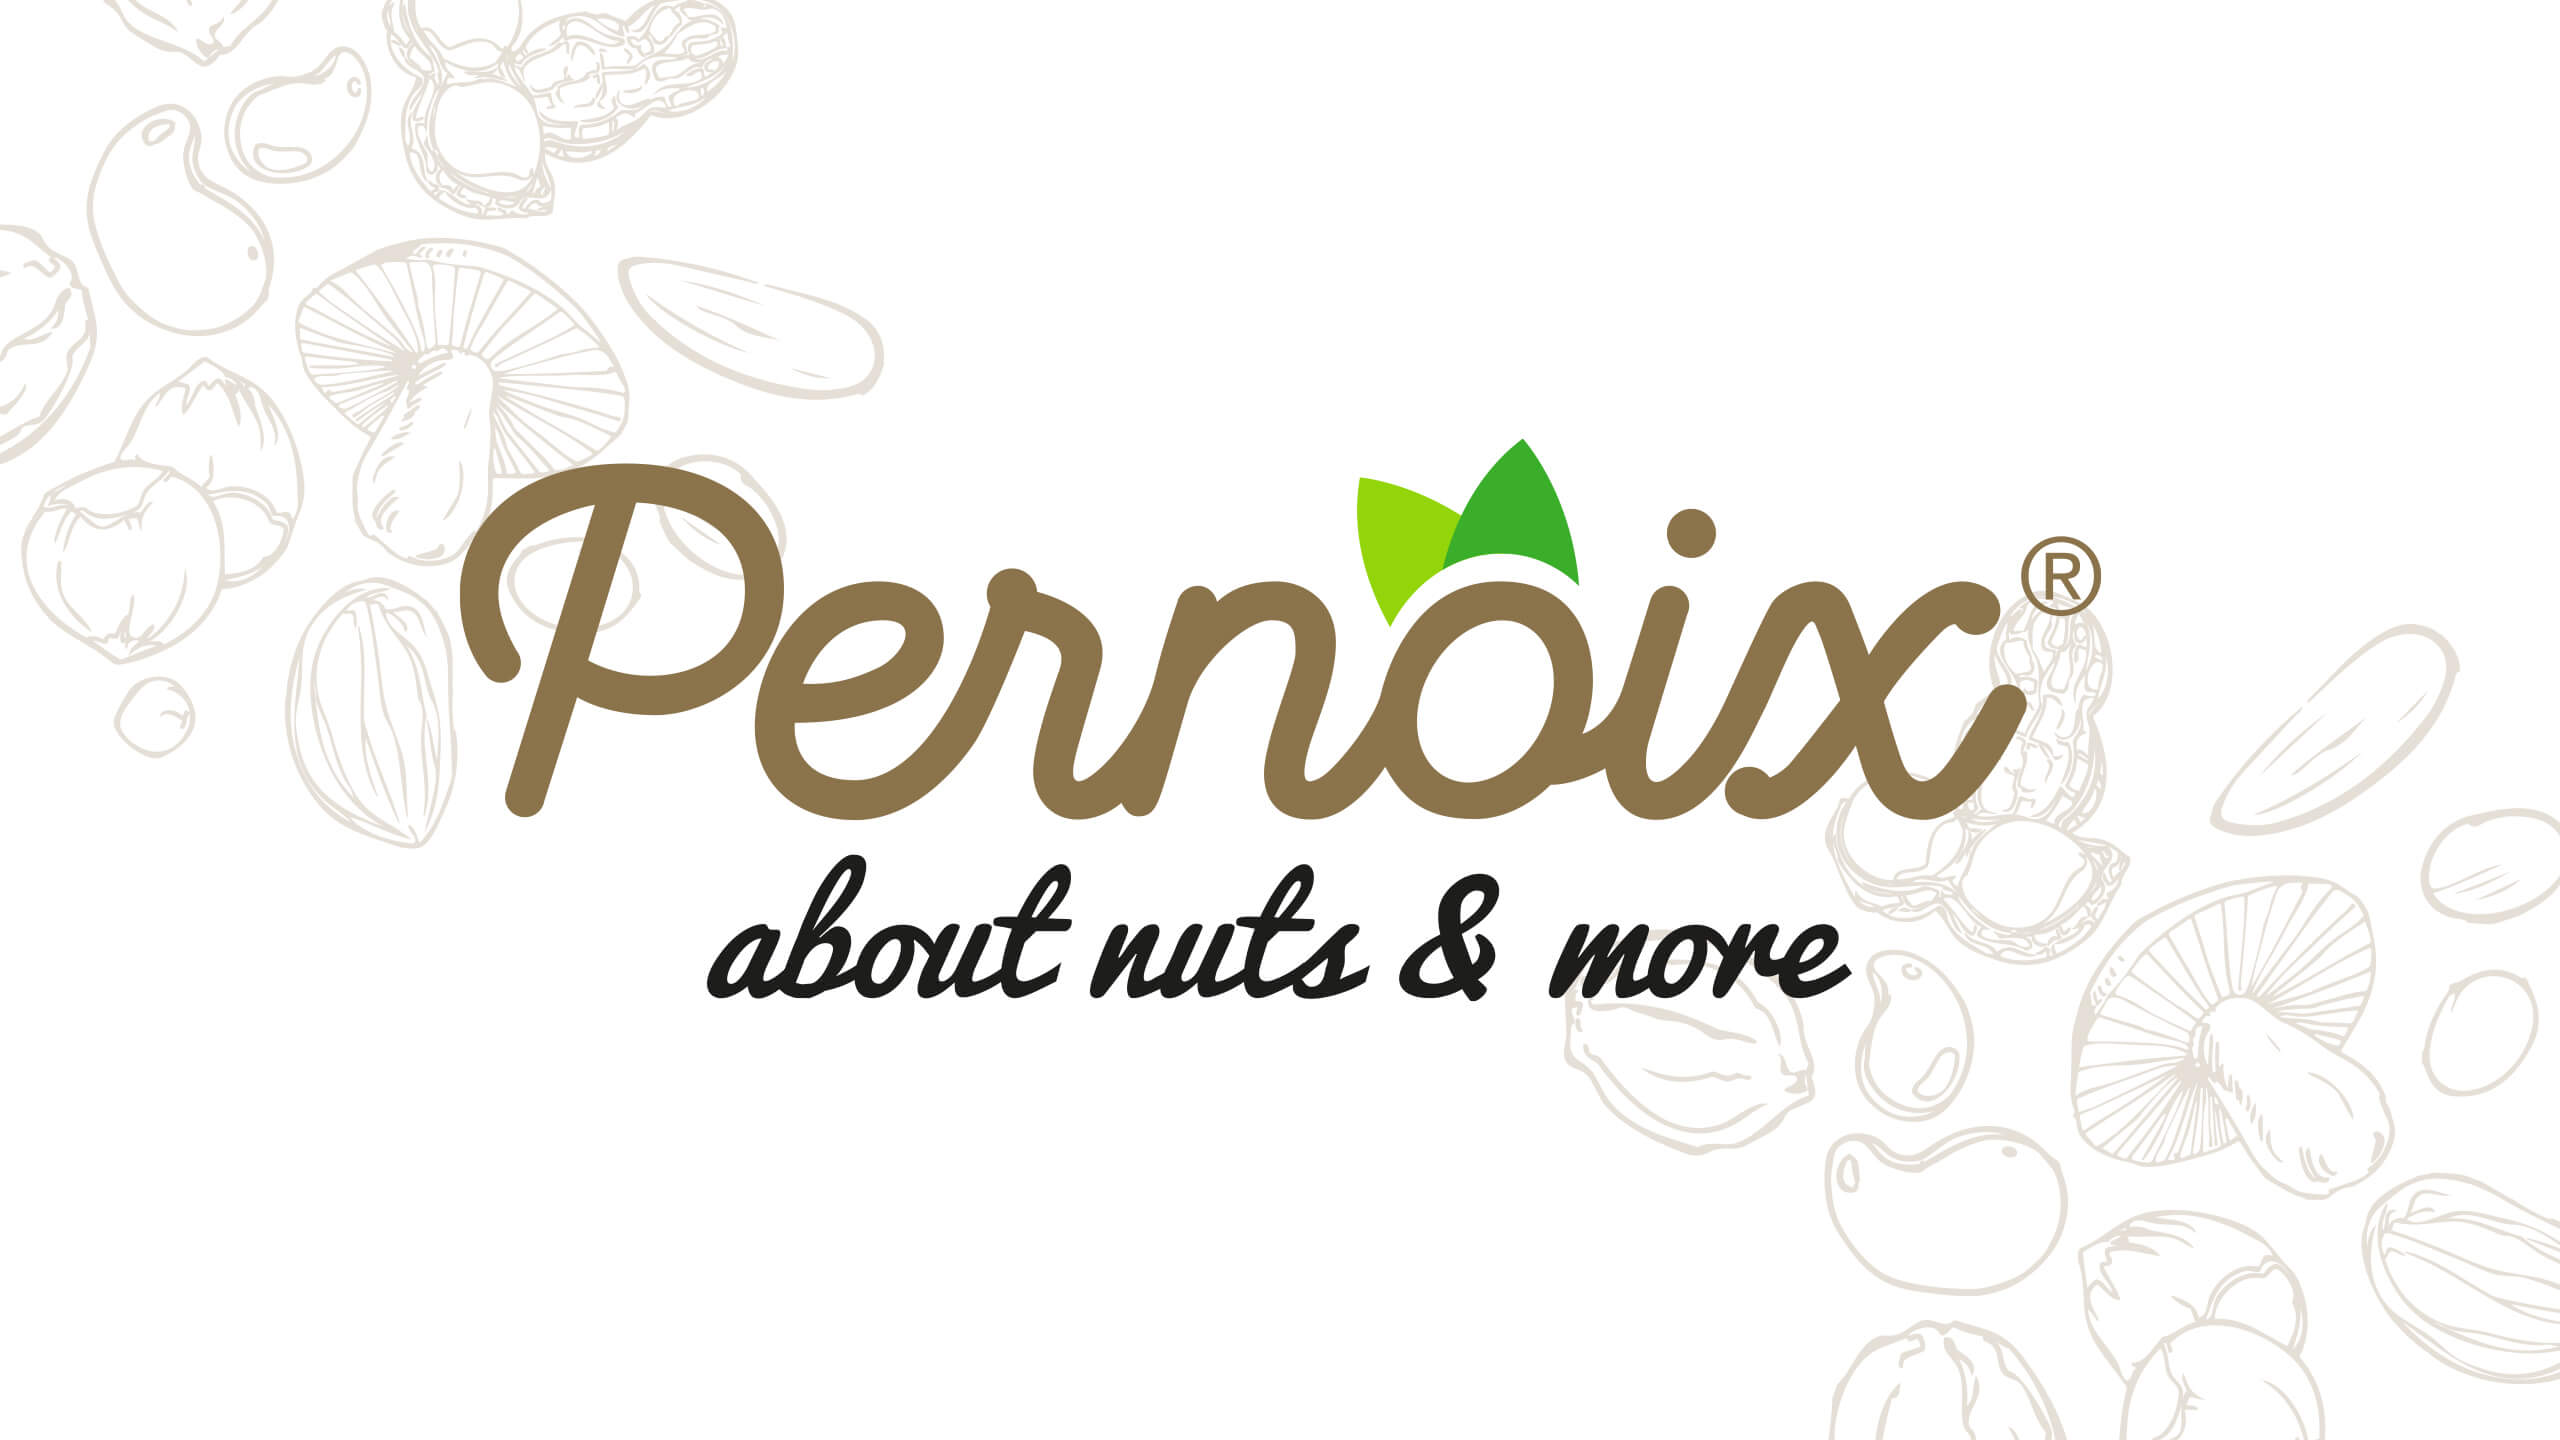 logo merk pernoix